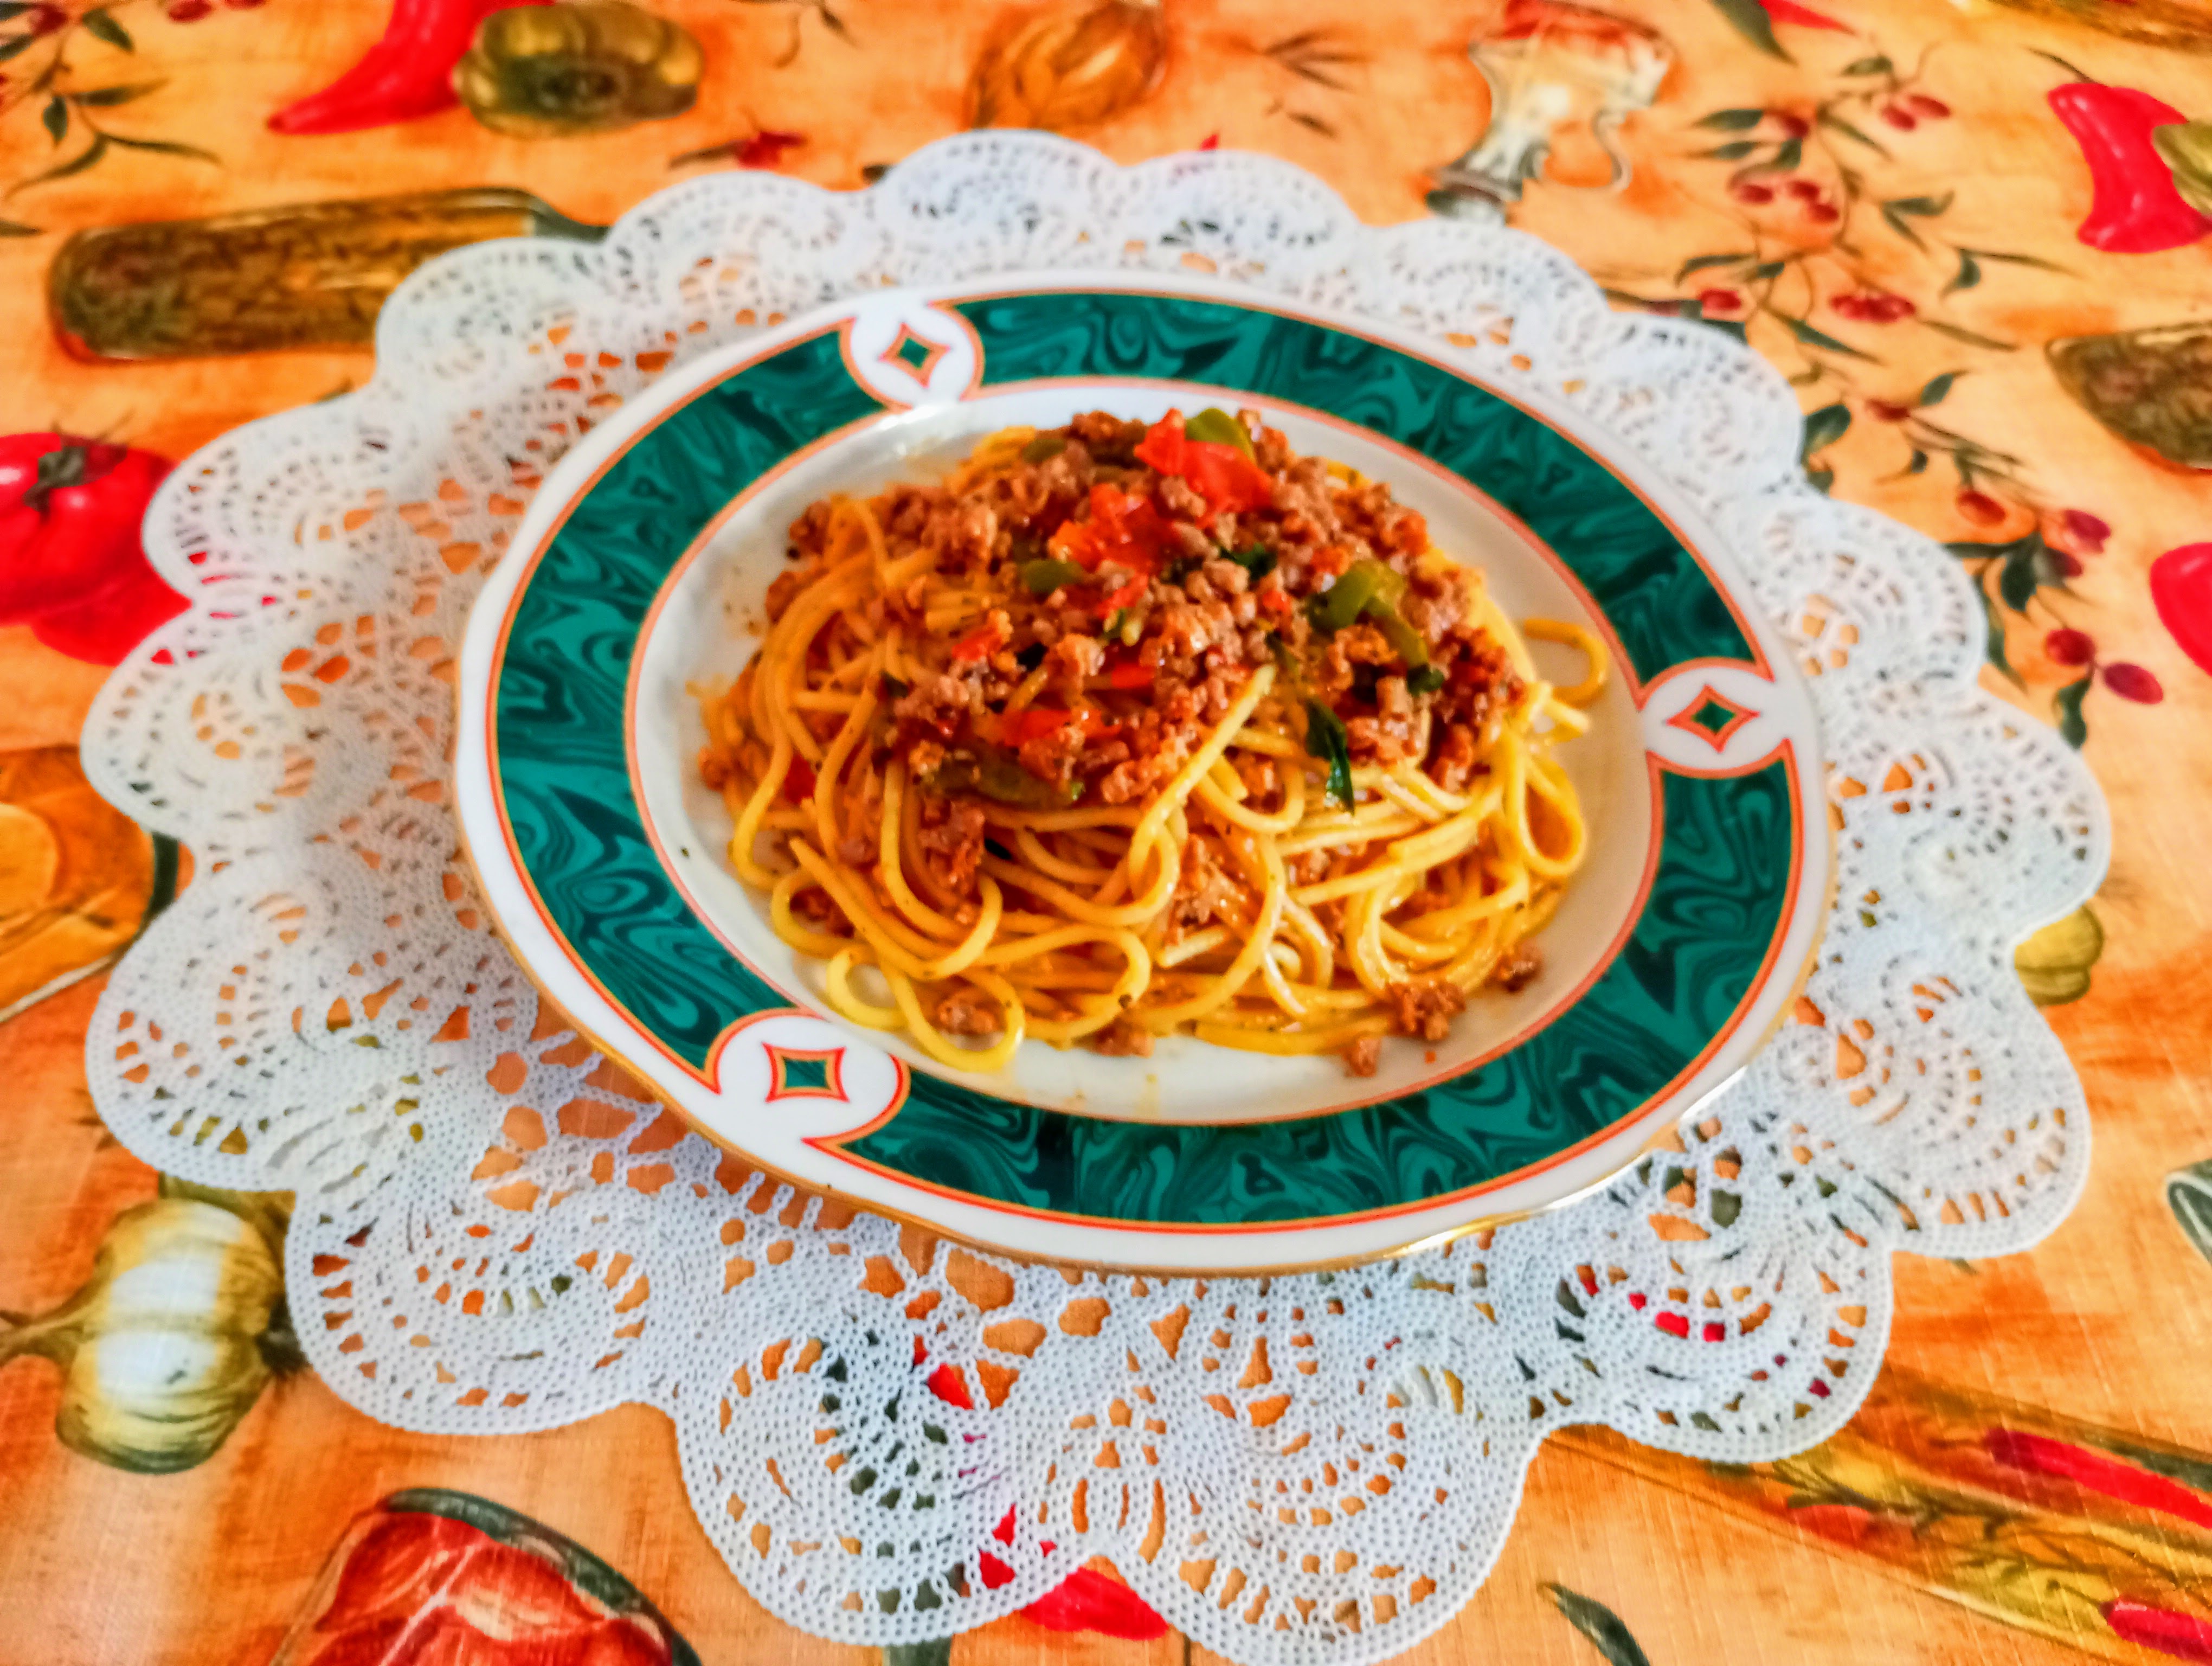 Спагетти в томатно-мясном соусе "Болоньезе"  